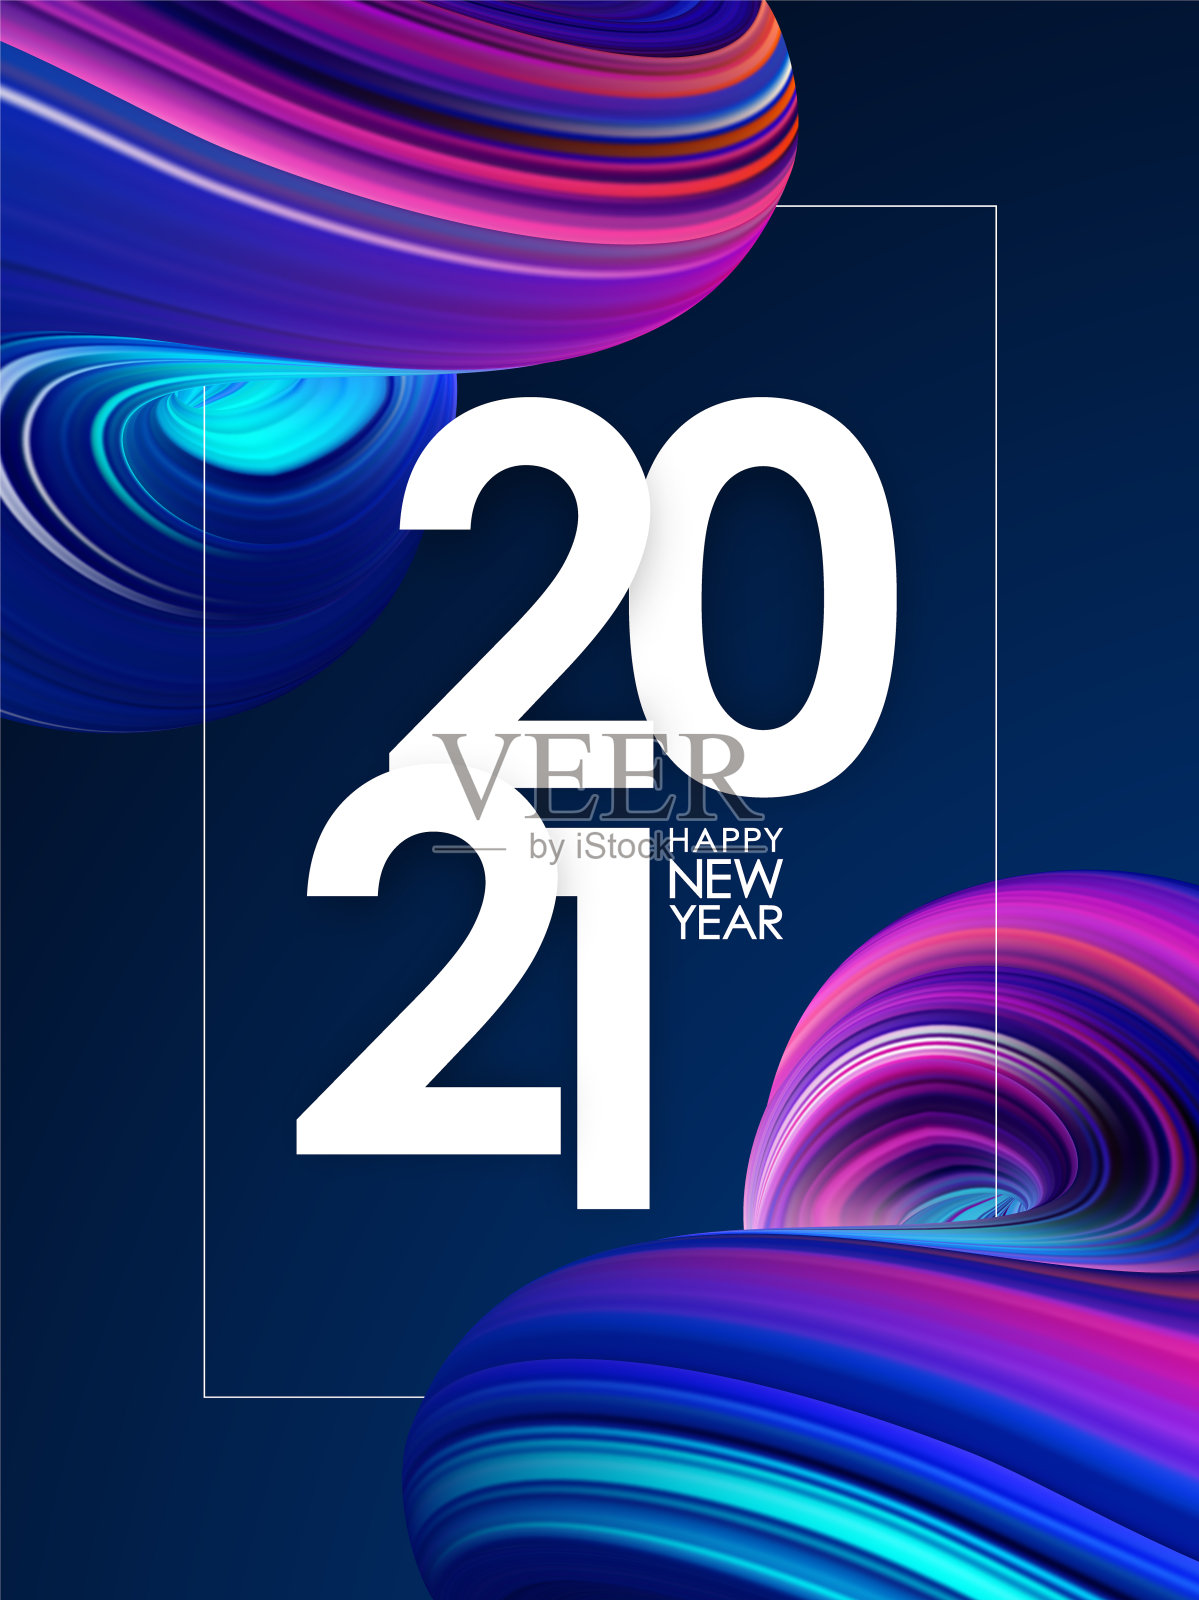 2021年新年快乐。问候海报与3D霓虹彩色抽象扭曲流体形状。时尚的设计设计模板素材